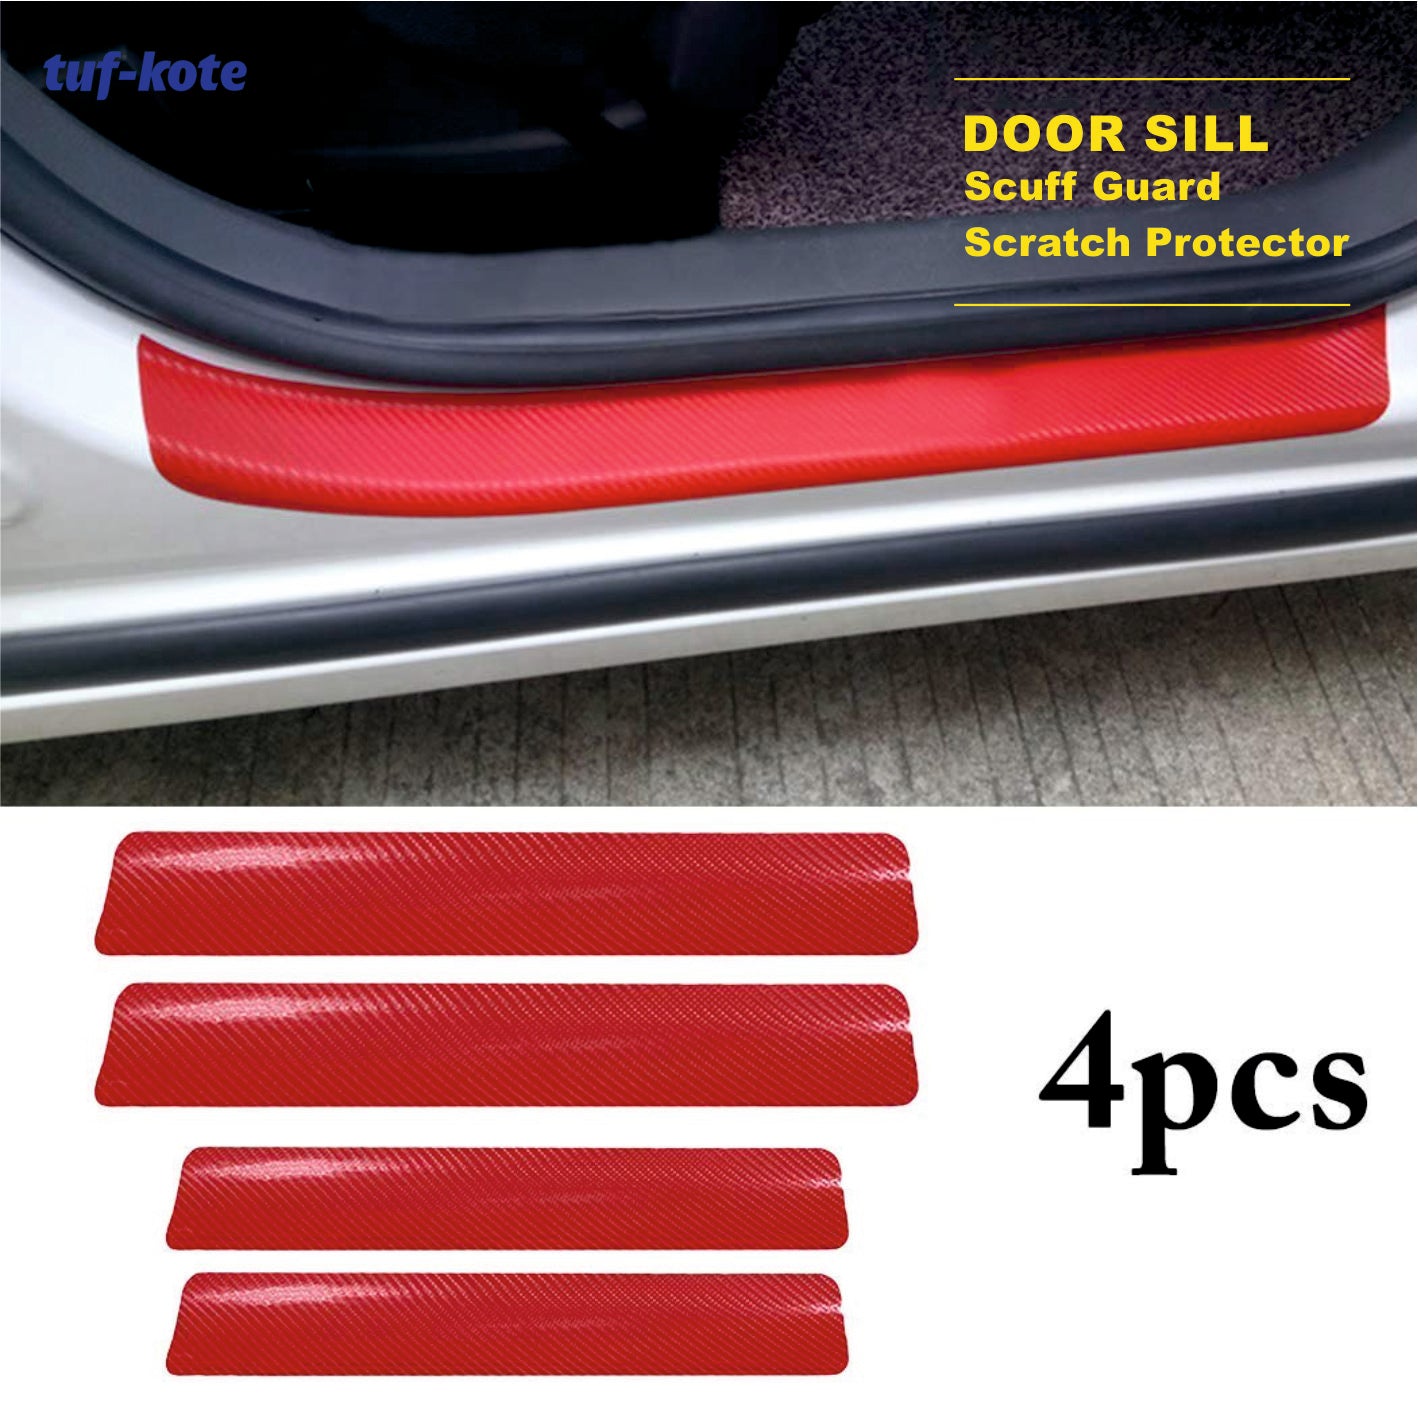 tuf-kote® 4PCS Car Sticker Universal Anti-Scratch Door Sill Scuff Guard Car Decal